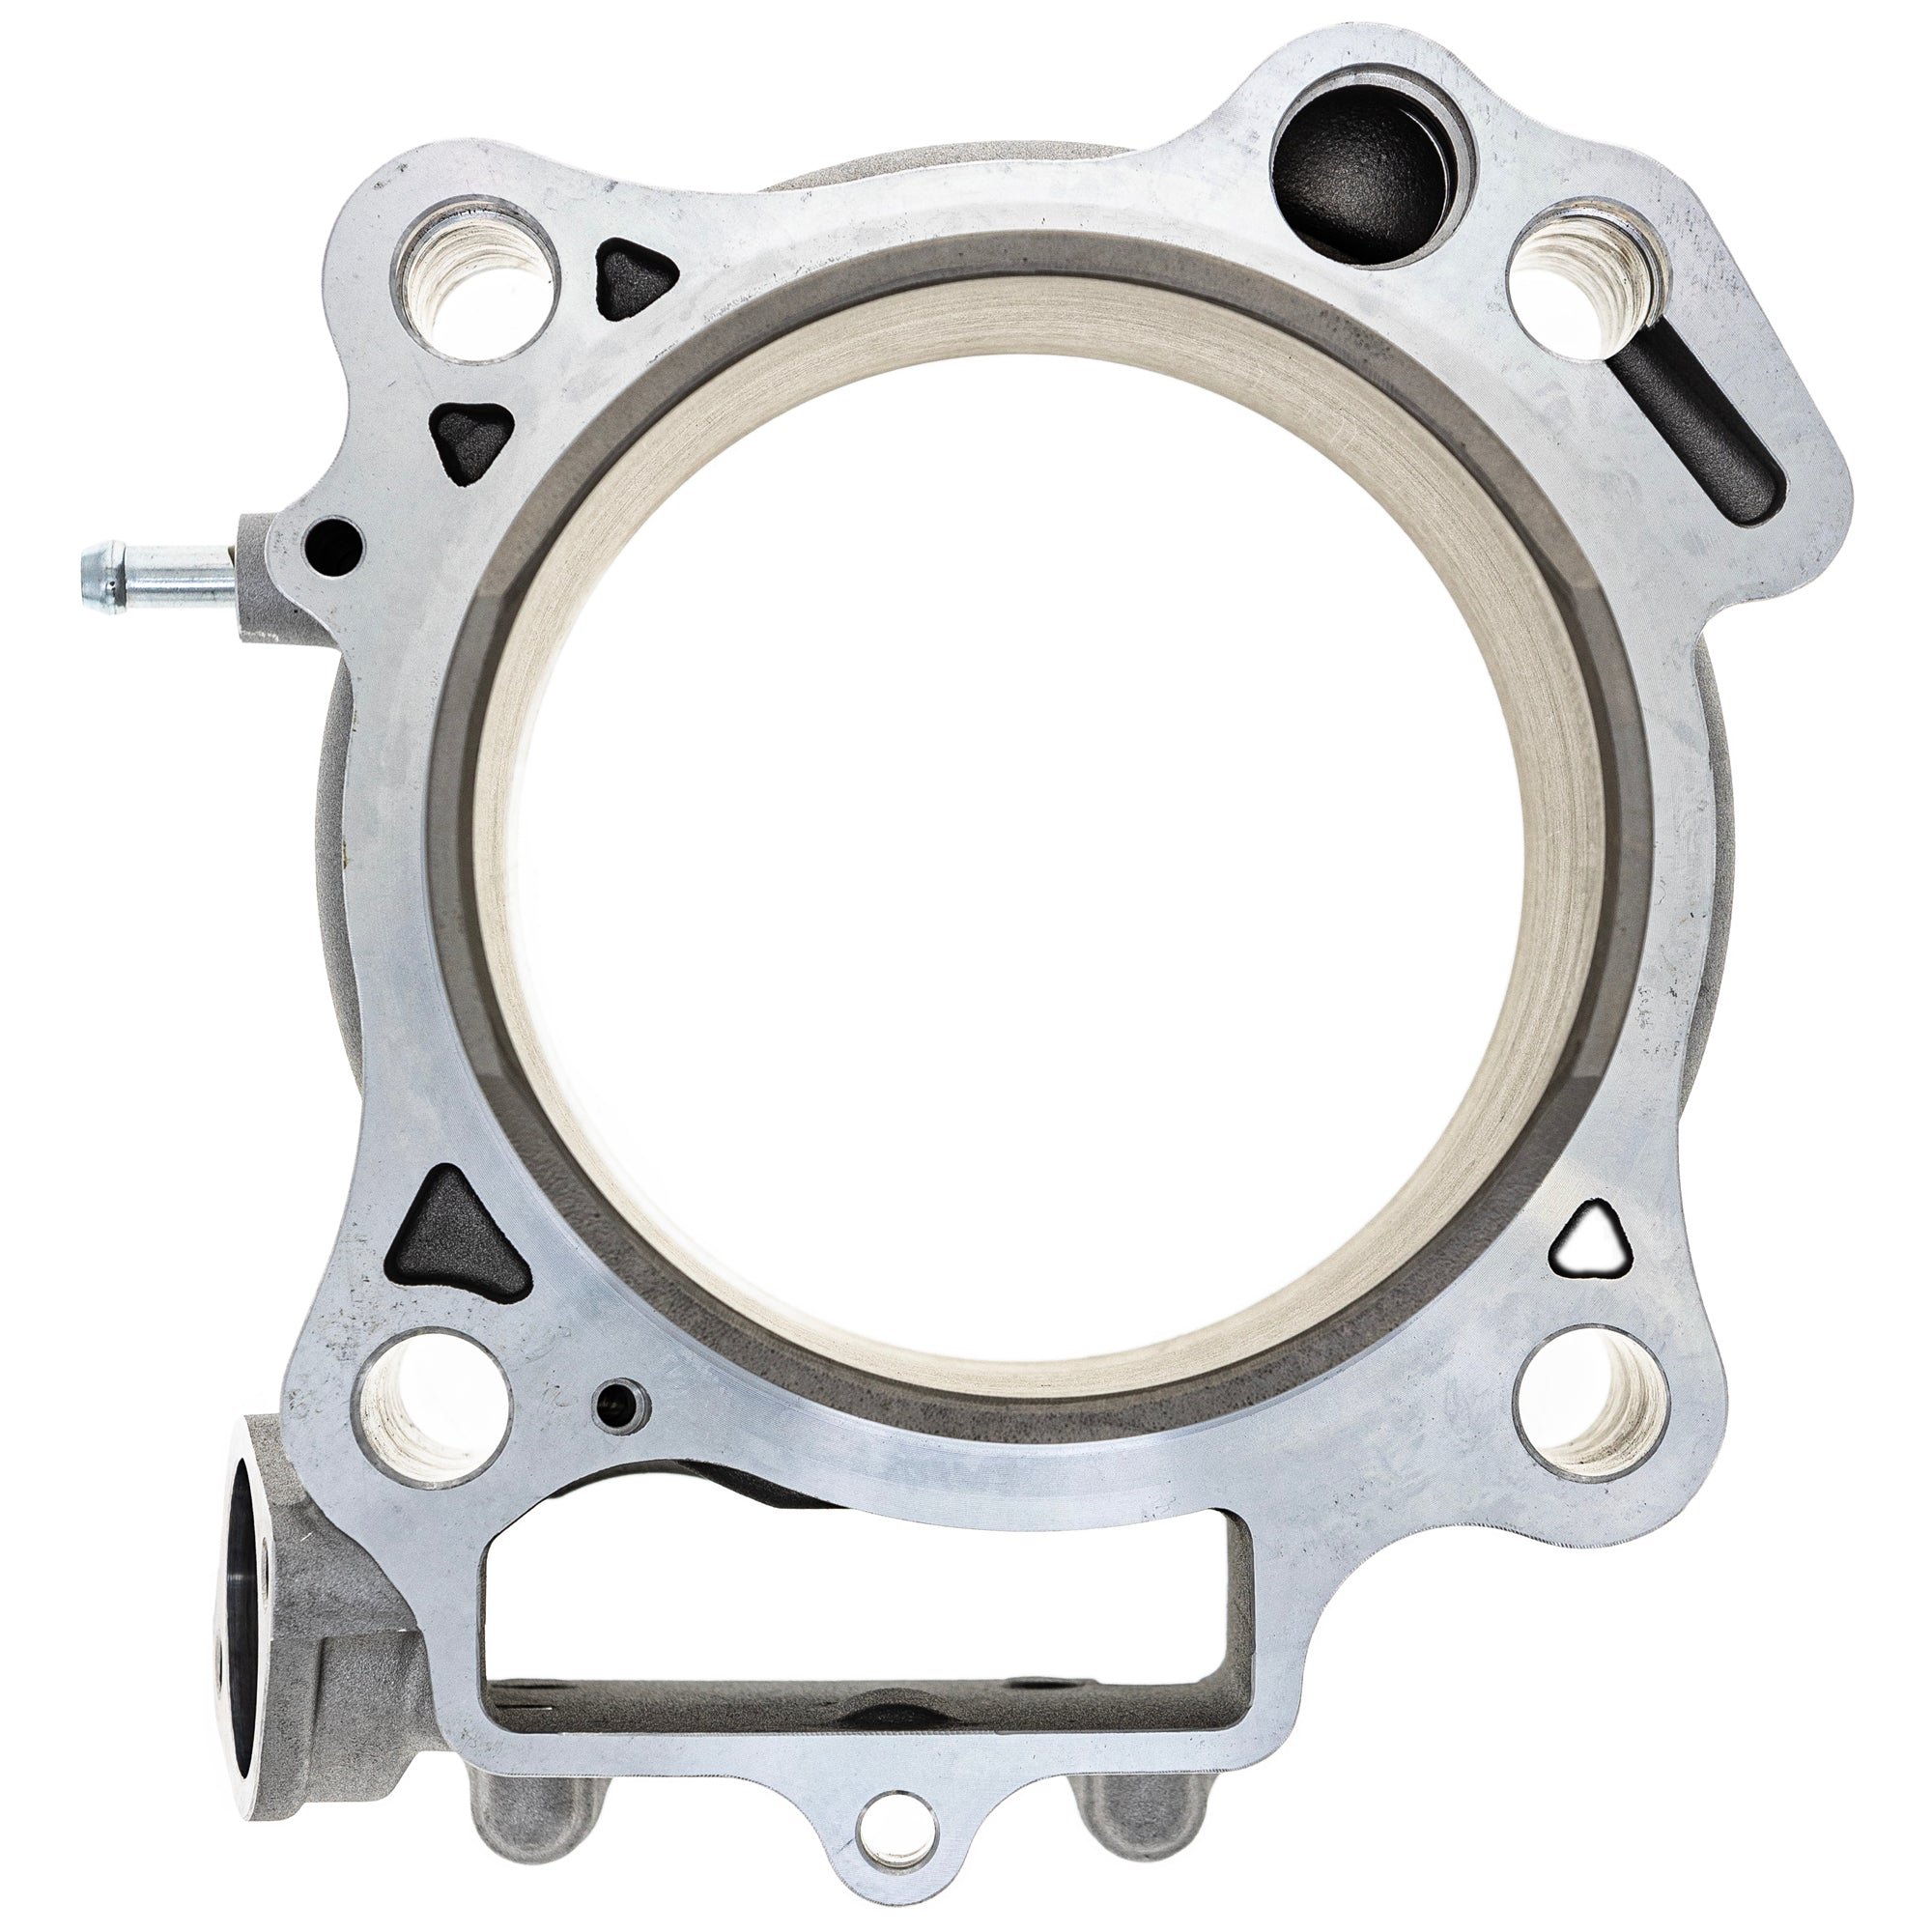 Engine Cylinder Gasket Kit for Honda TRX450 R 12100-HP1-601